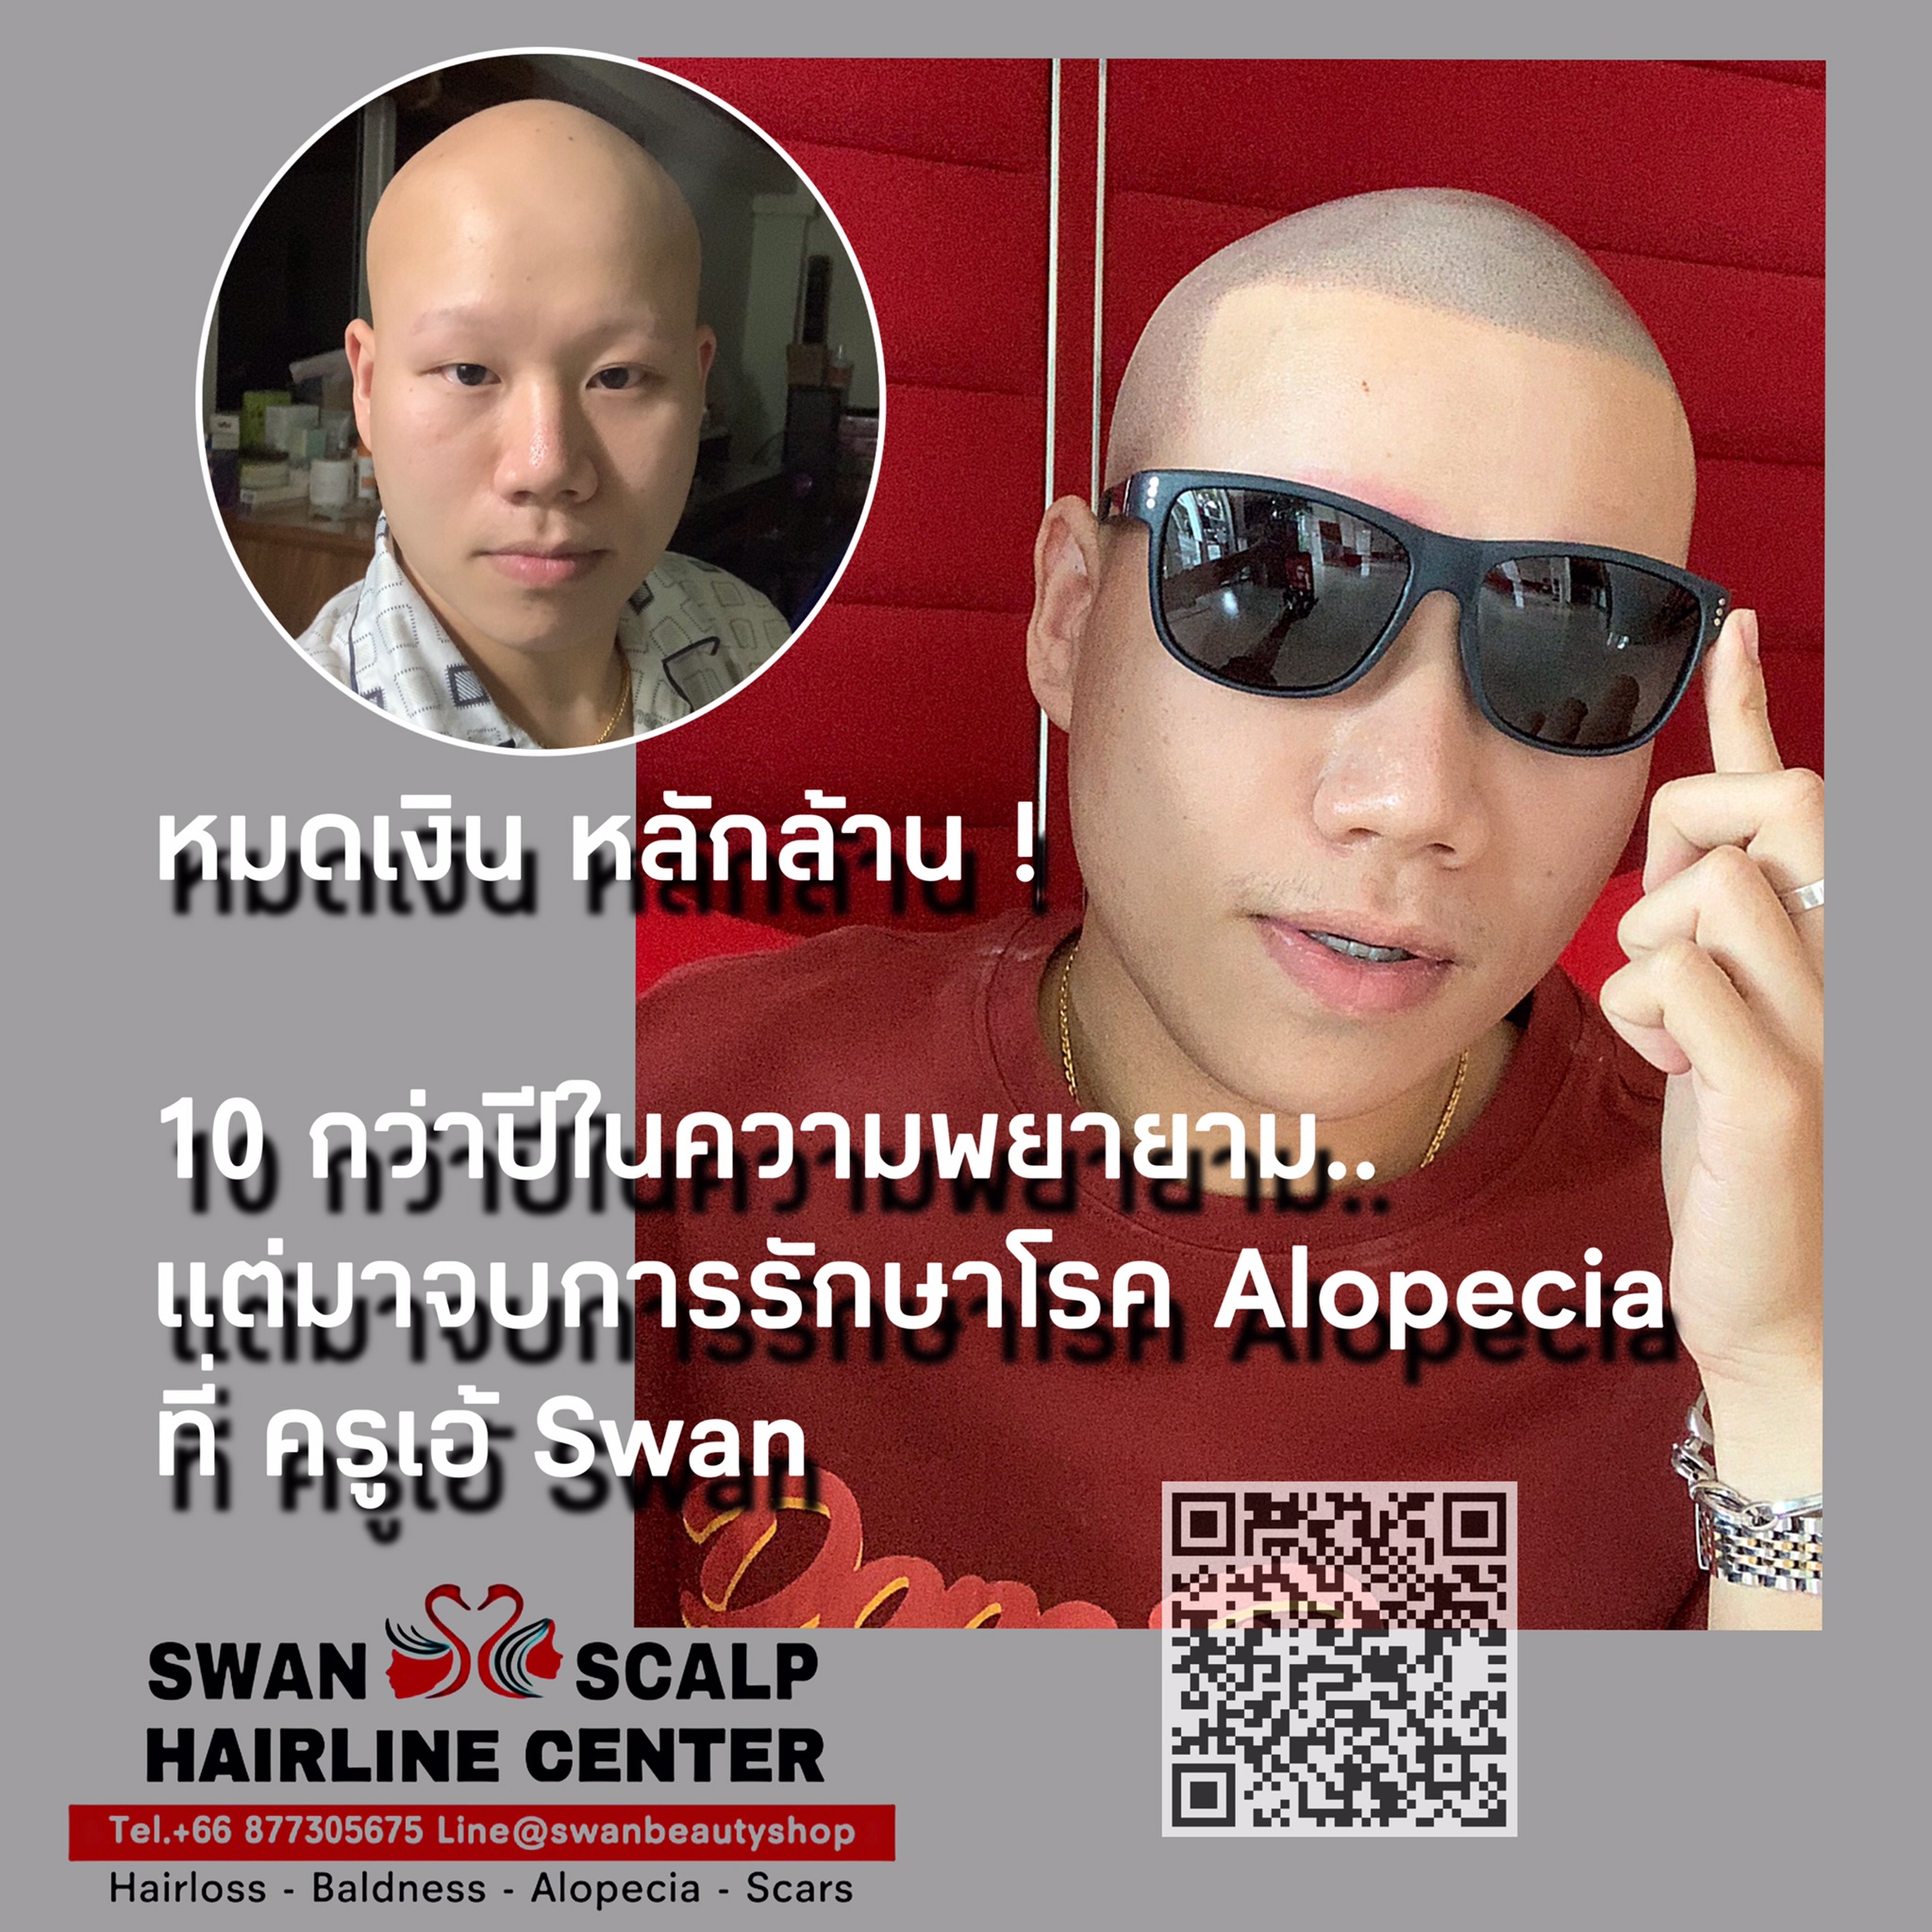 สักสกินเฮดรักษาโรค Alopecia